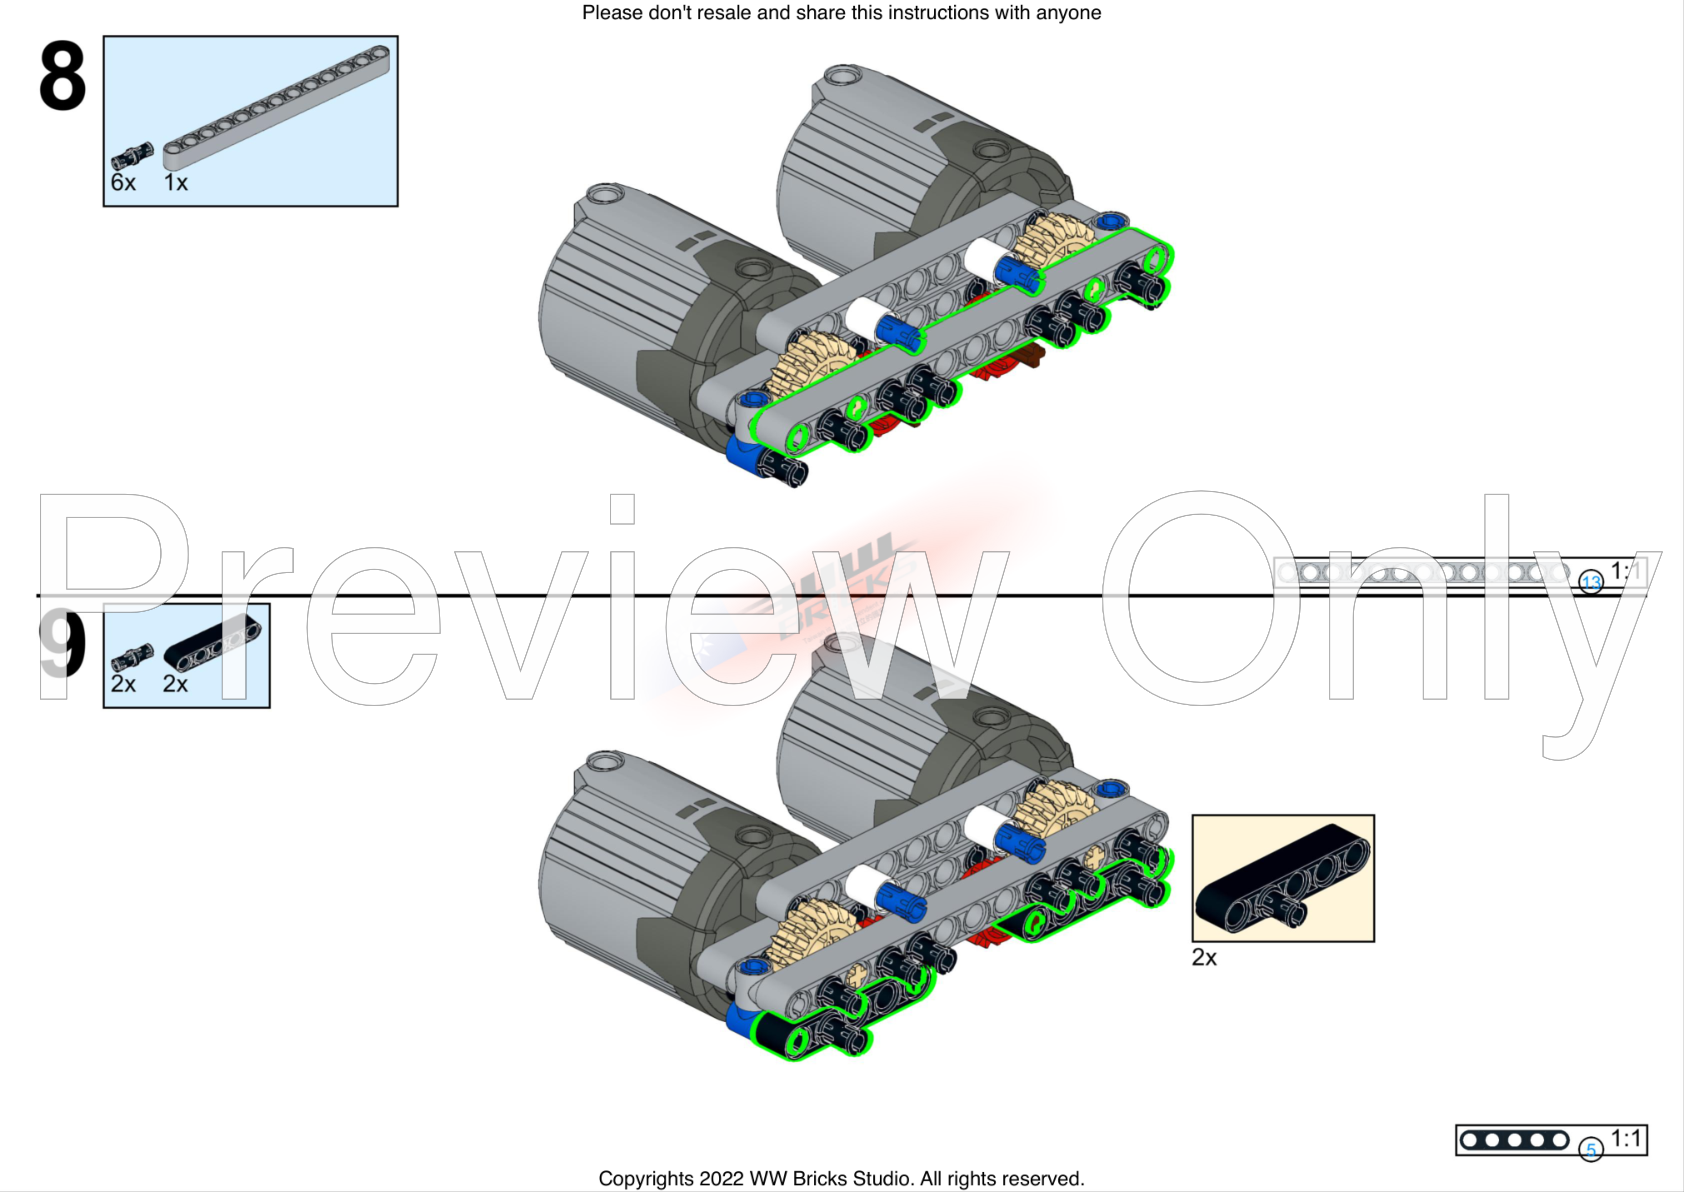 LEGO MOC [RC] LEGO Technic 42083 Bugatti Chiron with BuWizz 2.0 by 